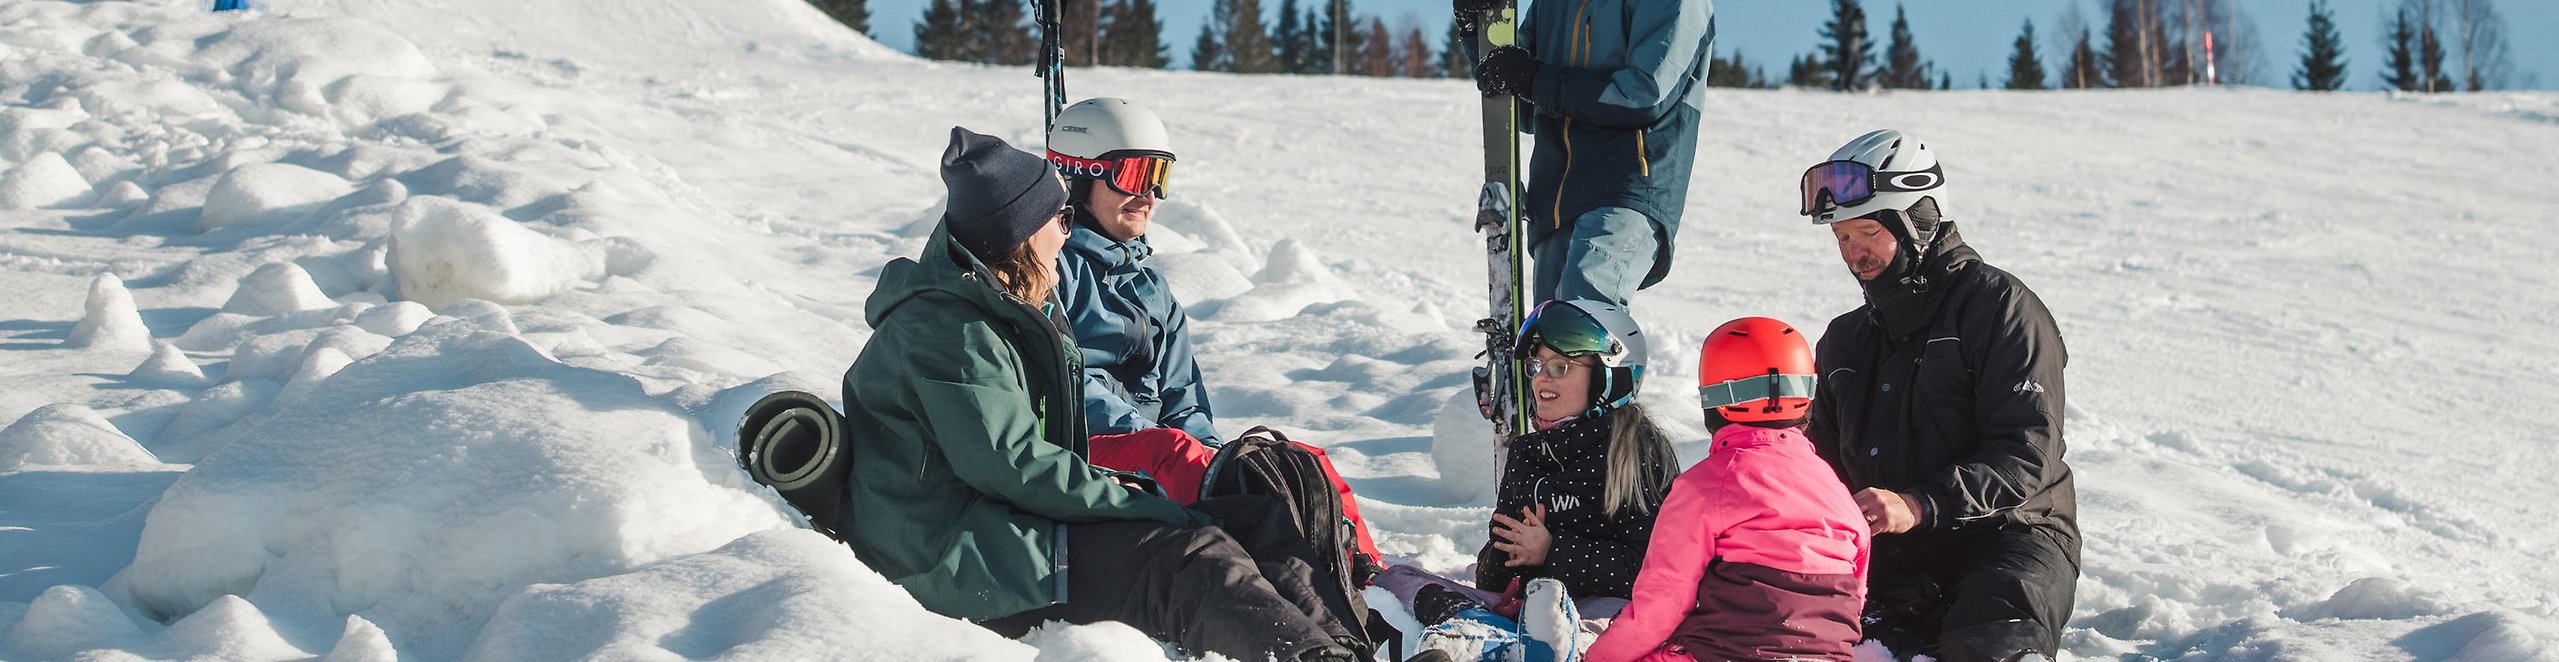 Vuxna och barn med slalomutrustning sitter på liggunderlag i snön.